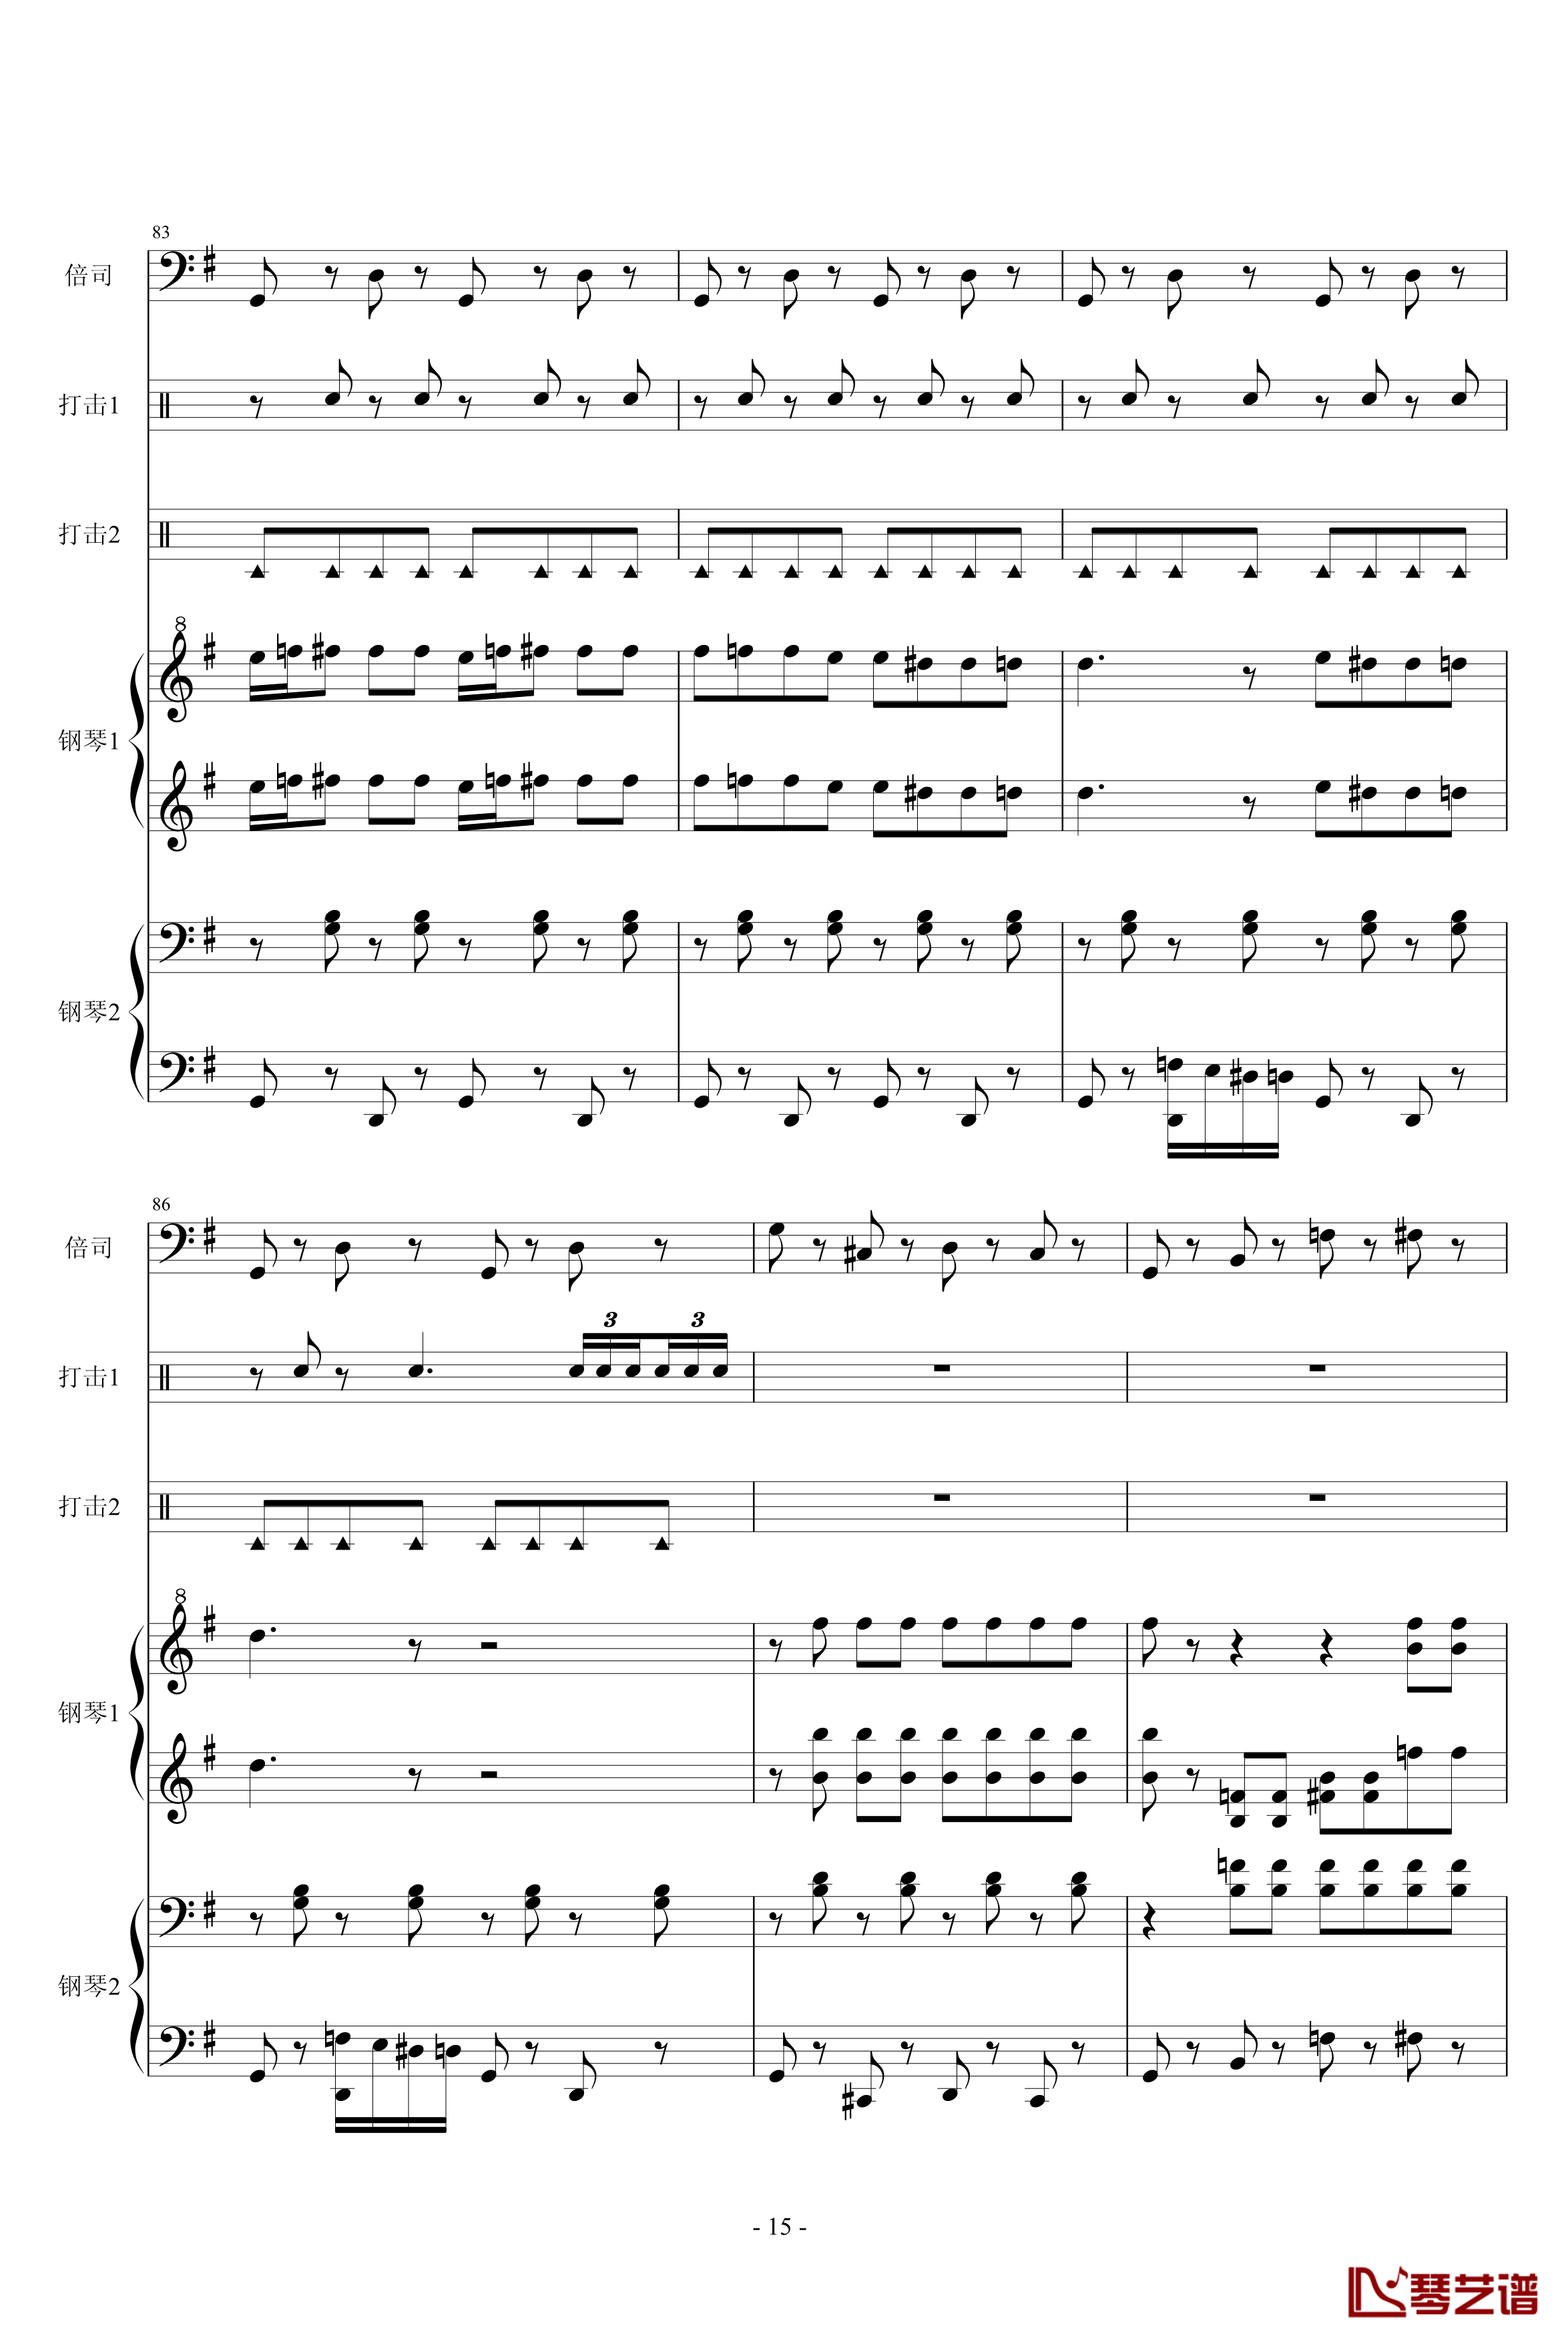 马刀舞曲钢琴谱-乐队总谱-世界名曲15